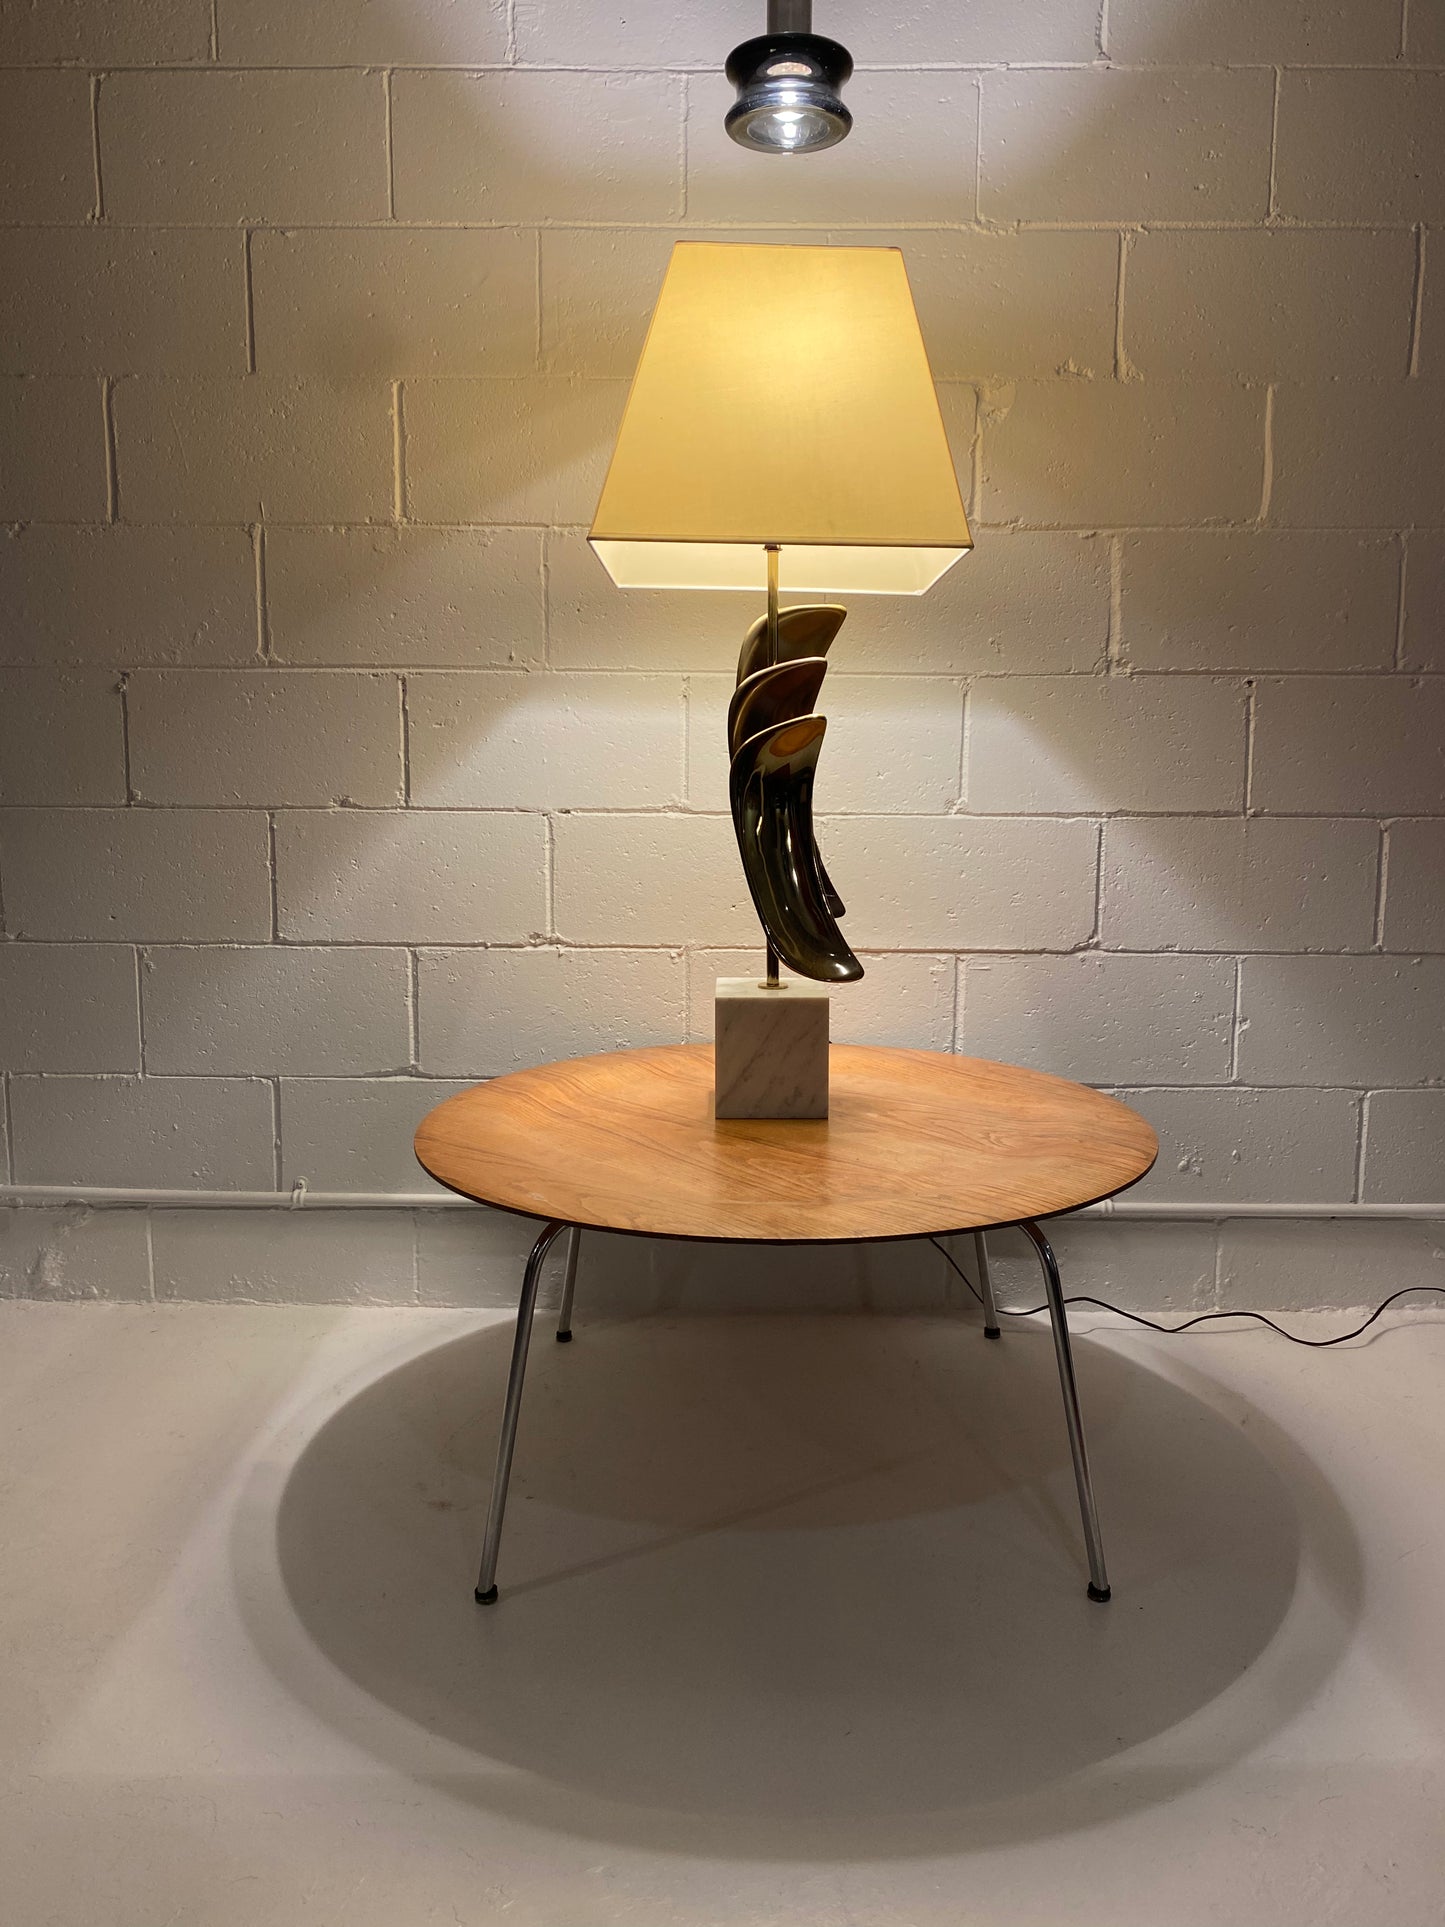 Laurel Lamp Co. Marble and Metal Sculptural Lamp